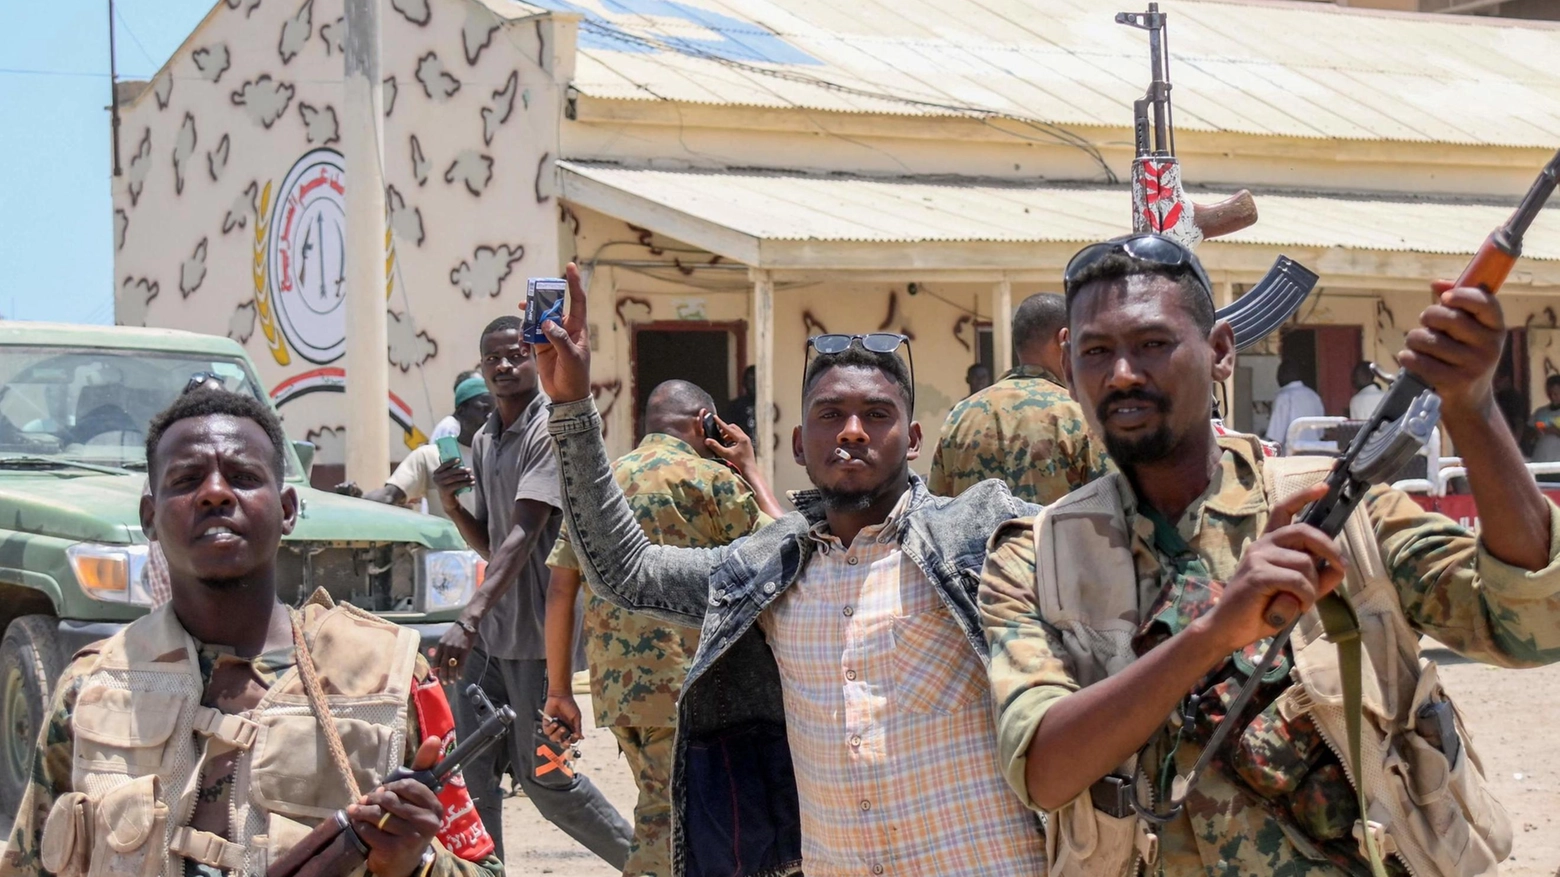 Guerra civile in Sudan  "Nel golpe la mano russa  In Africa noi europei  ci giochiamo il futuro"